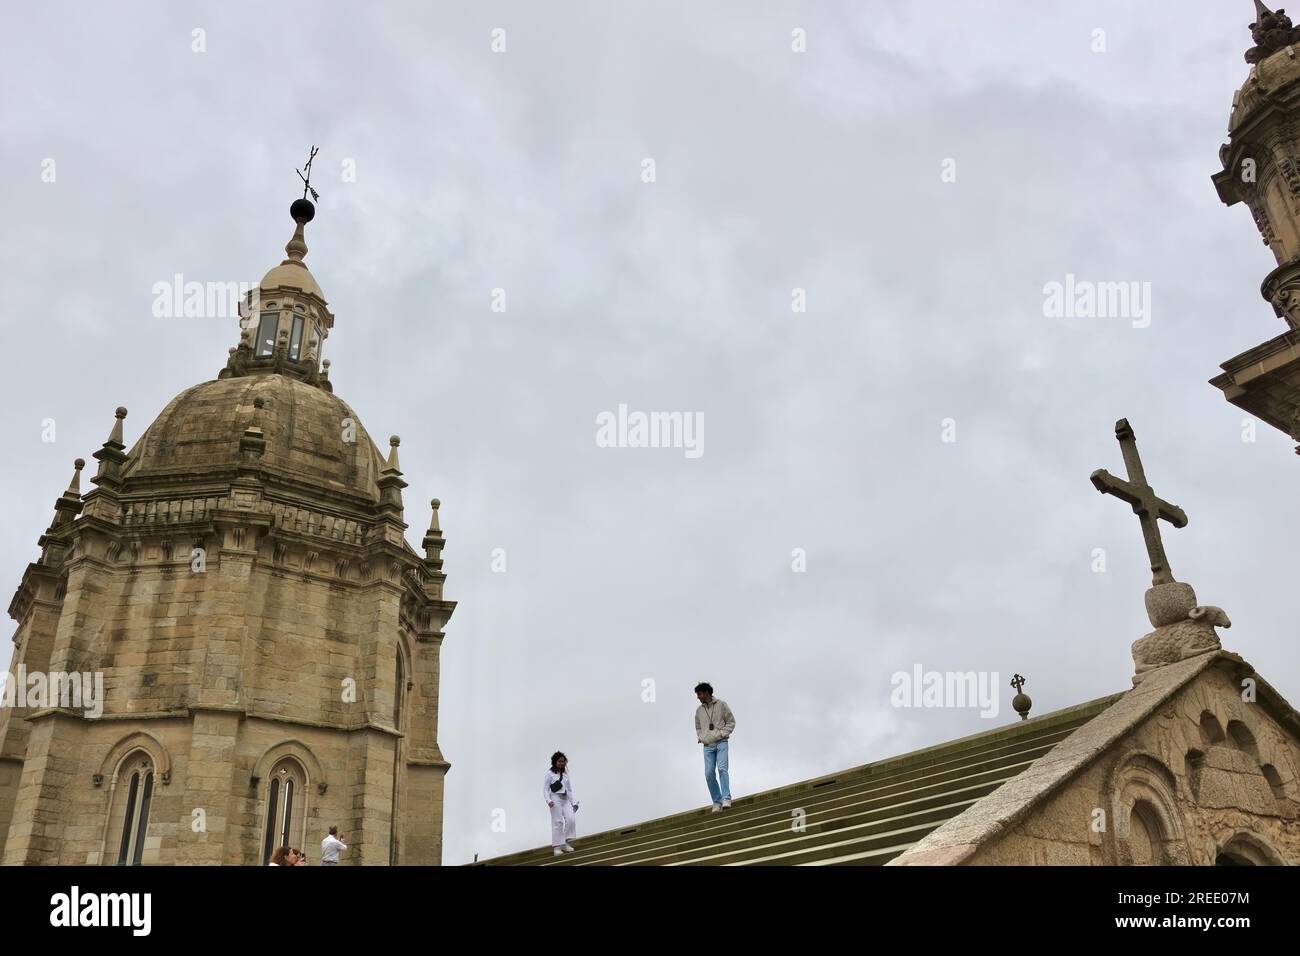 Vista sul tetto di una delle torri della cattedrale di Santiago e croce in pietra su un agnello di granito del dio agnus dei Santiago de Compostela Galizia Spagna Foto Stock